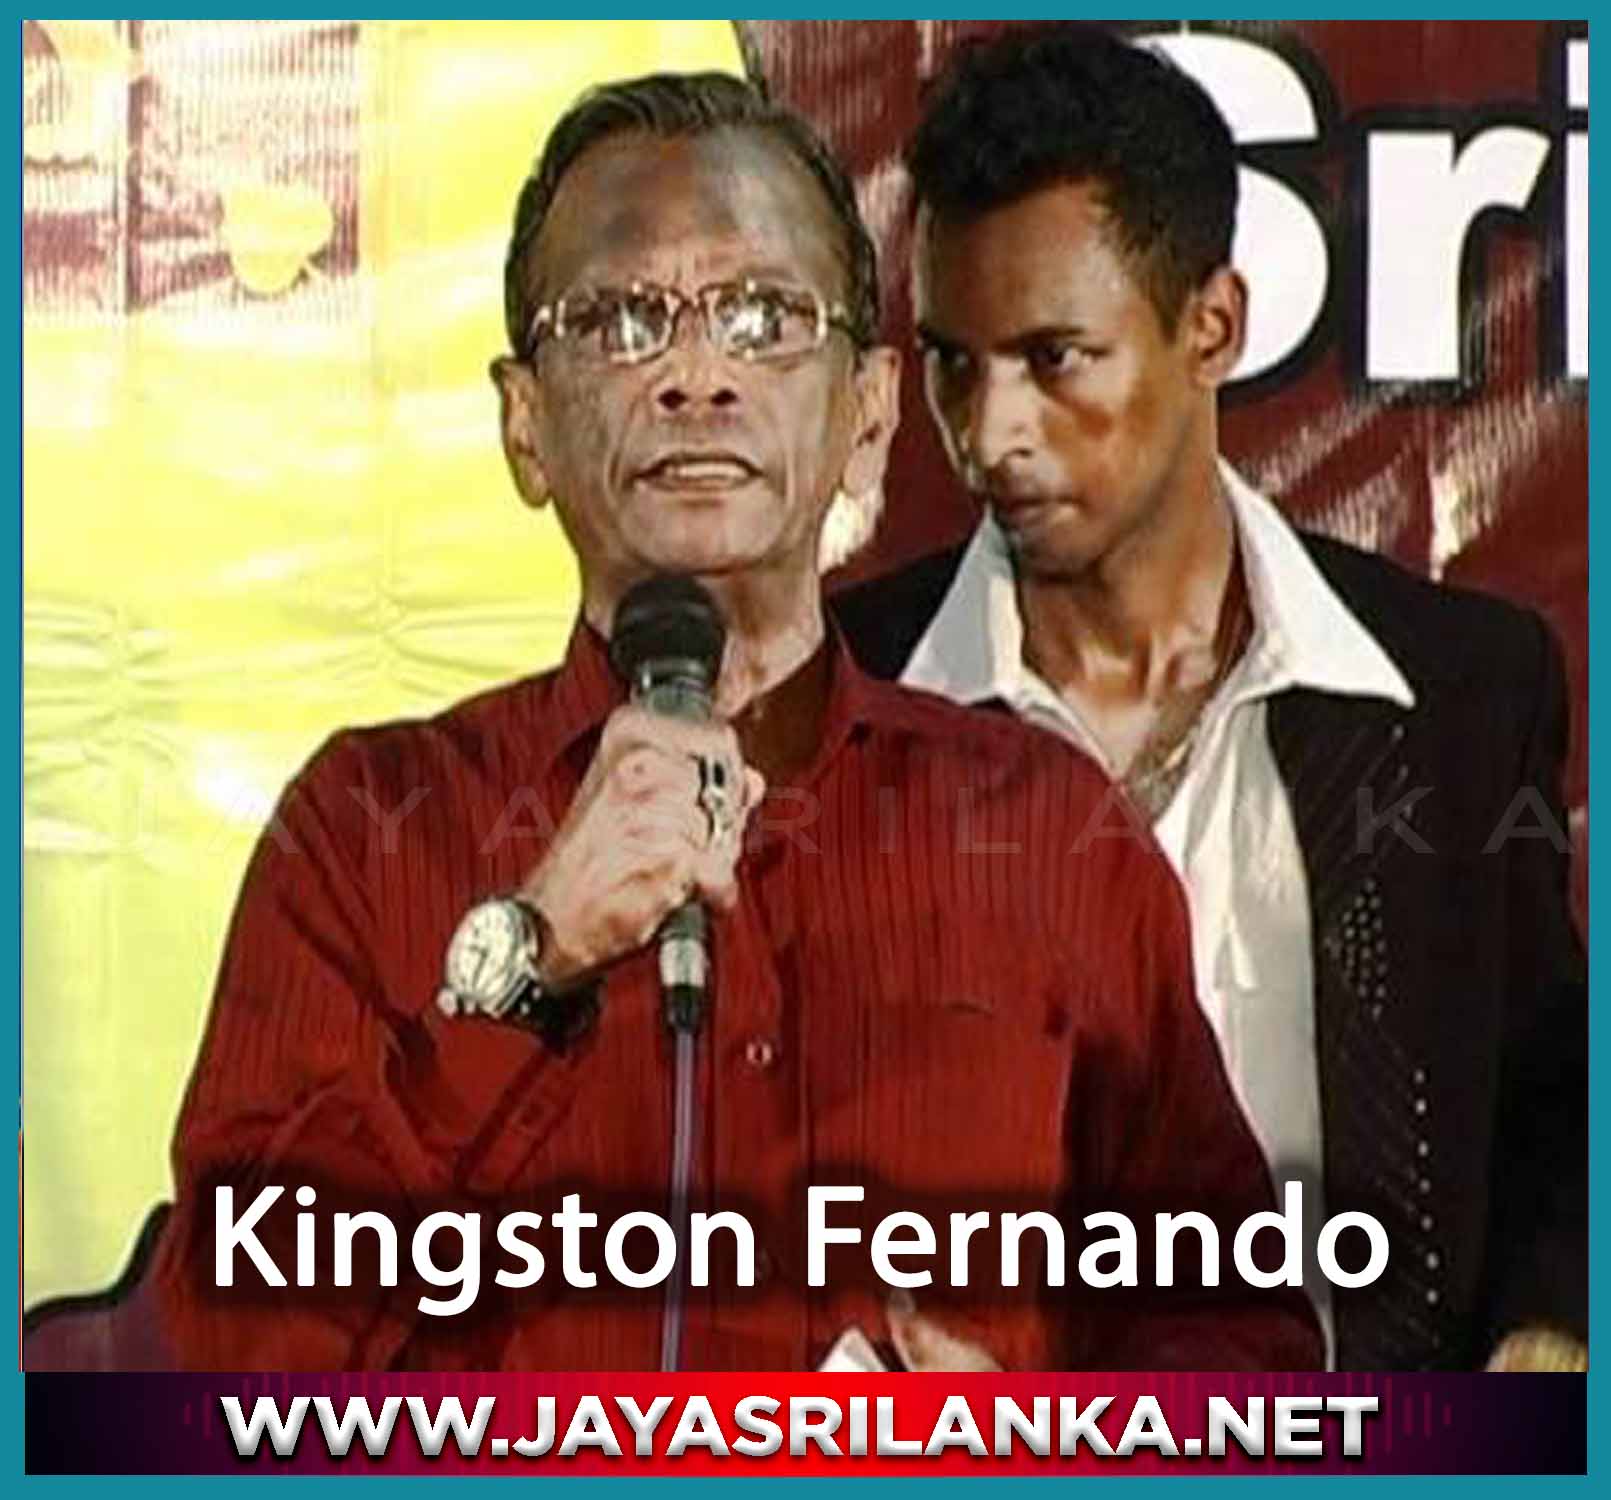 Kingston Fernando  